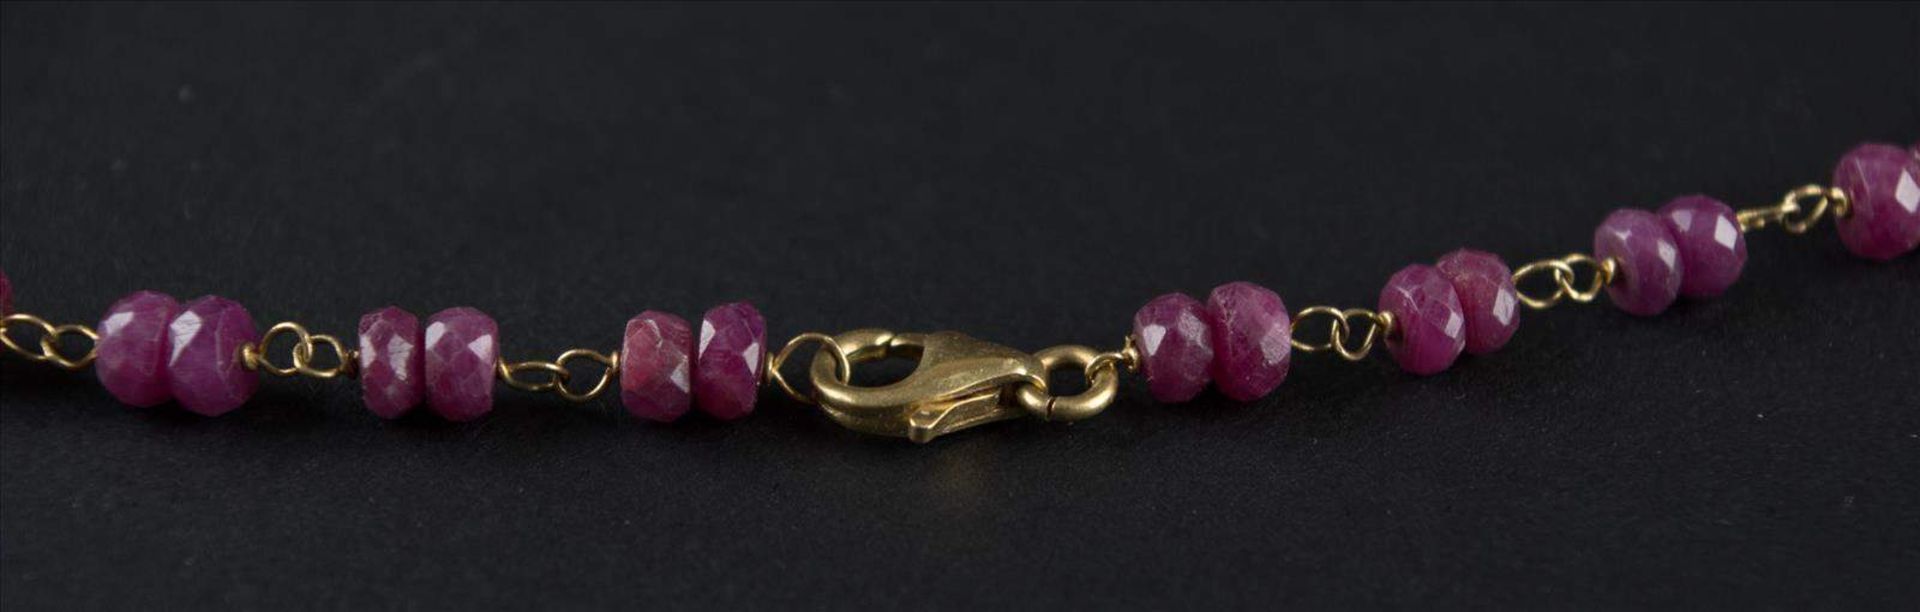 Kette mit Rubinen / Necklace with rubiesL: ca. 70 cm, Verschluß GG 750/000 /
length: c. 70 cm, clasp - Bild 3 aus 3